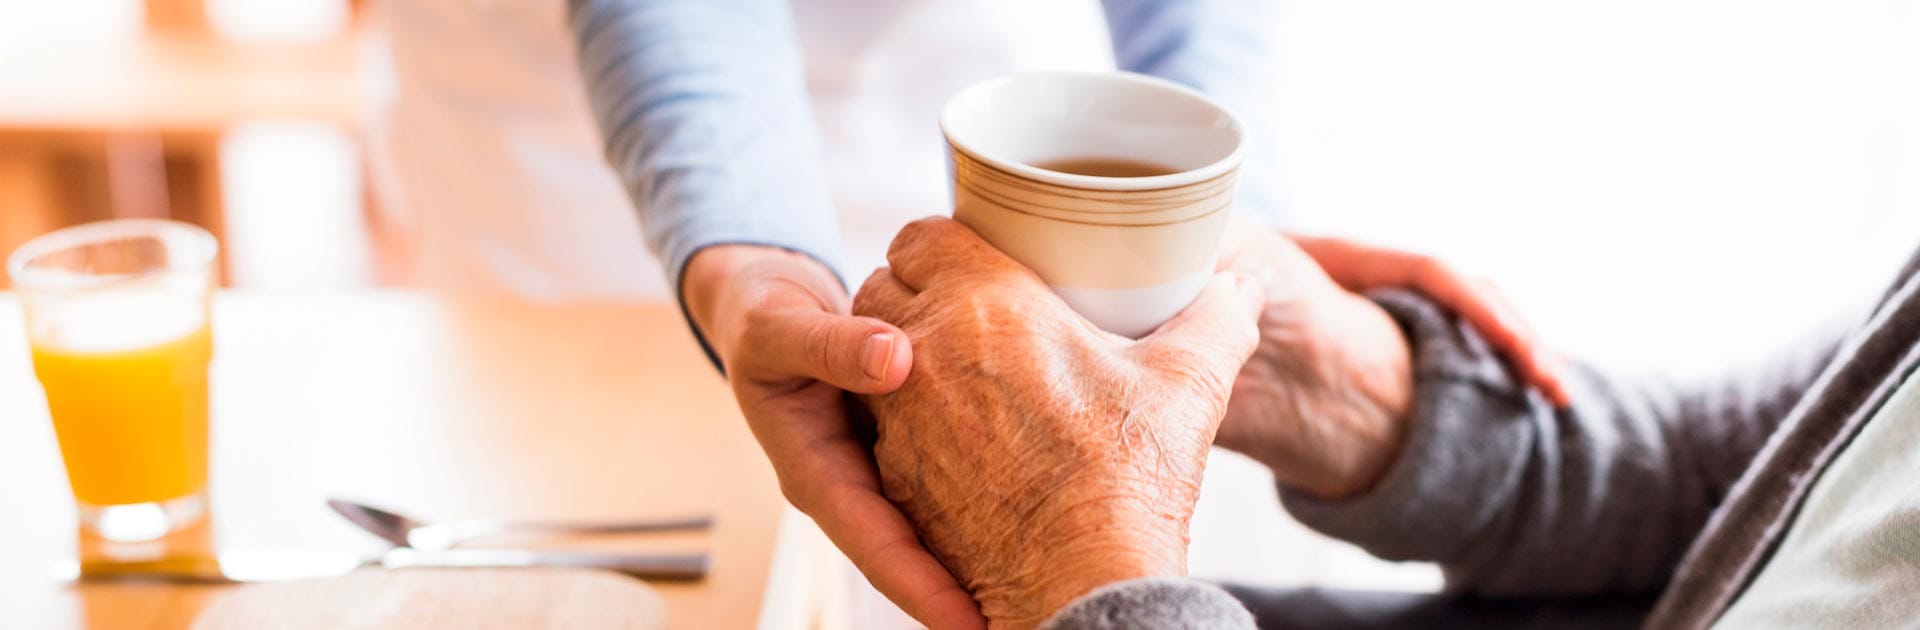 Eine Seniorin hält in den Händen eine Tasse Kaffee und wird dabei von einer Pflegerin unterstützt.